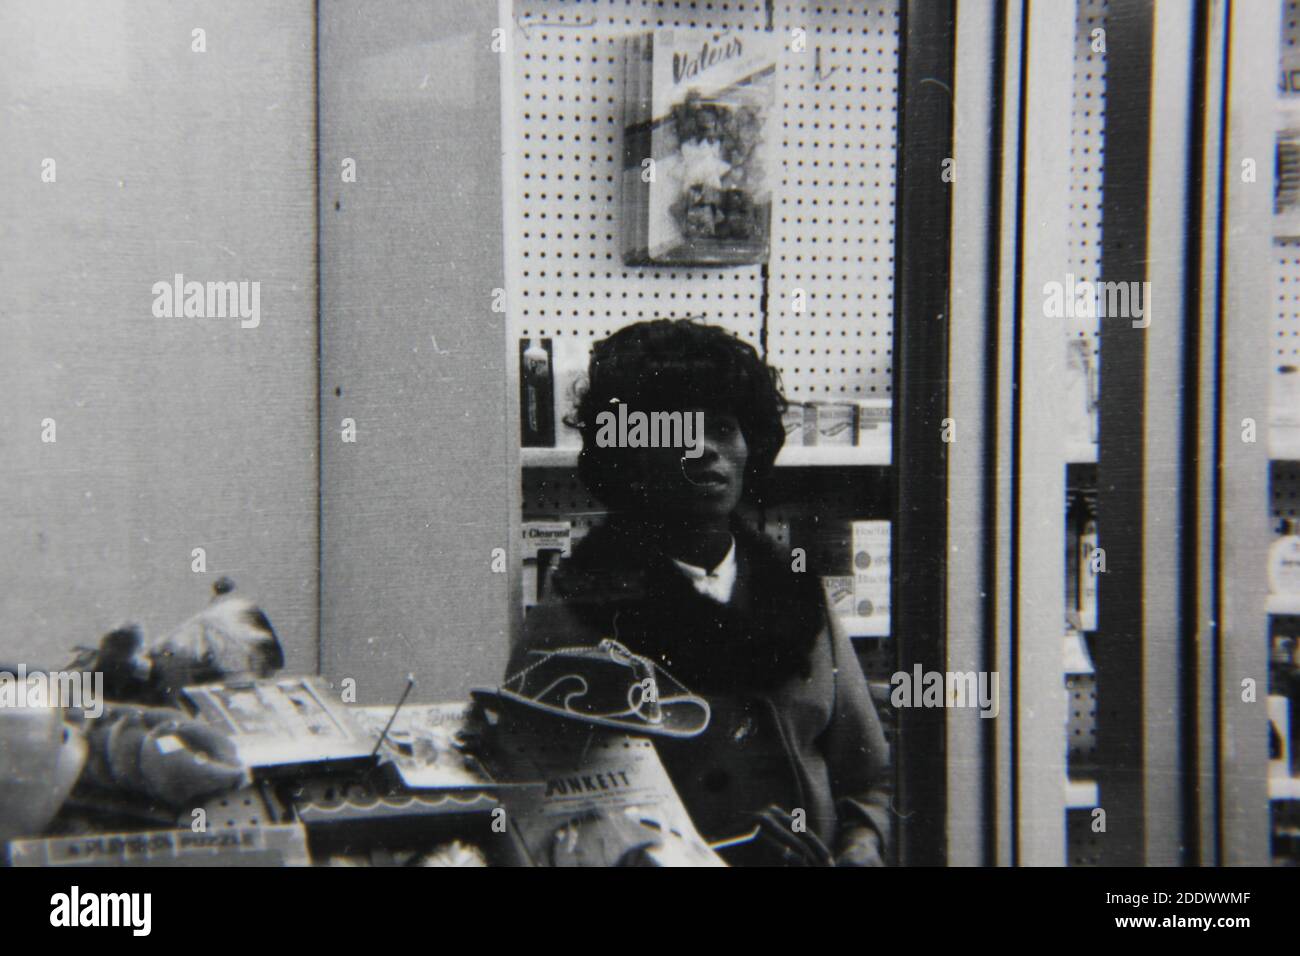 Belle photographie en noir et blanc vintage des années 1970 d'une femme lamée regardant l'appareil photo. Banque D'Images